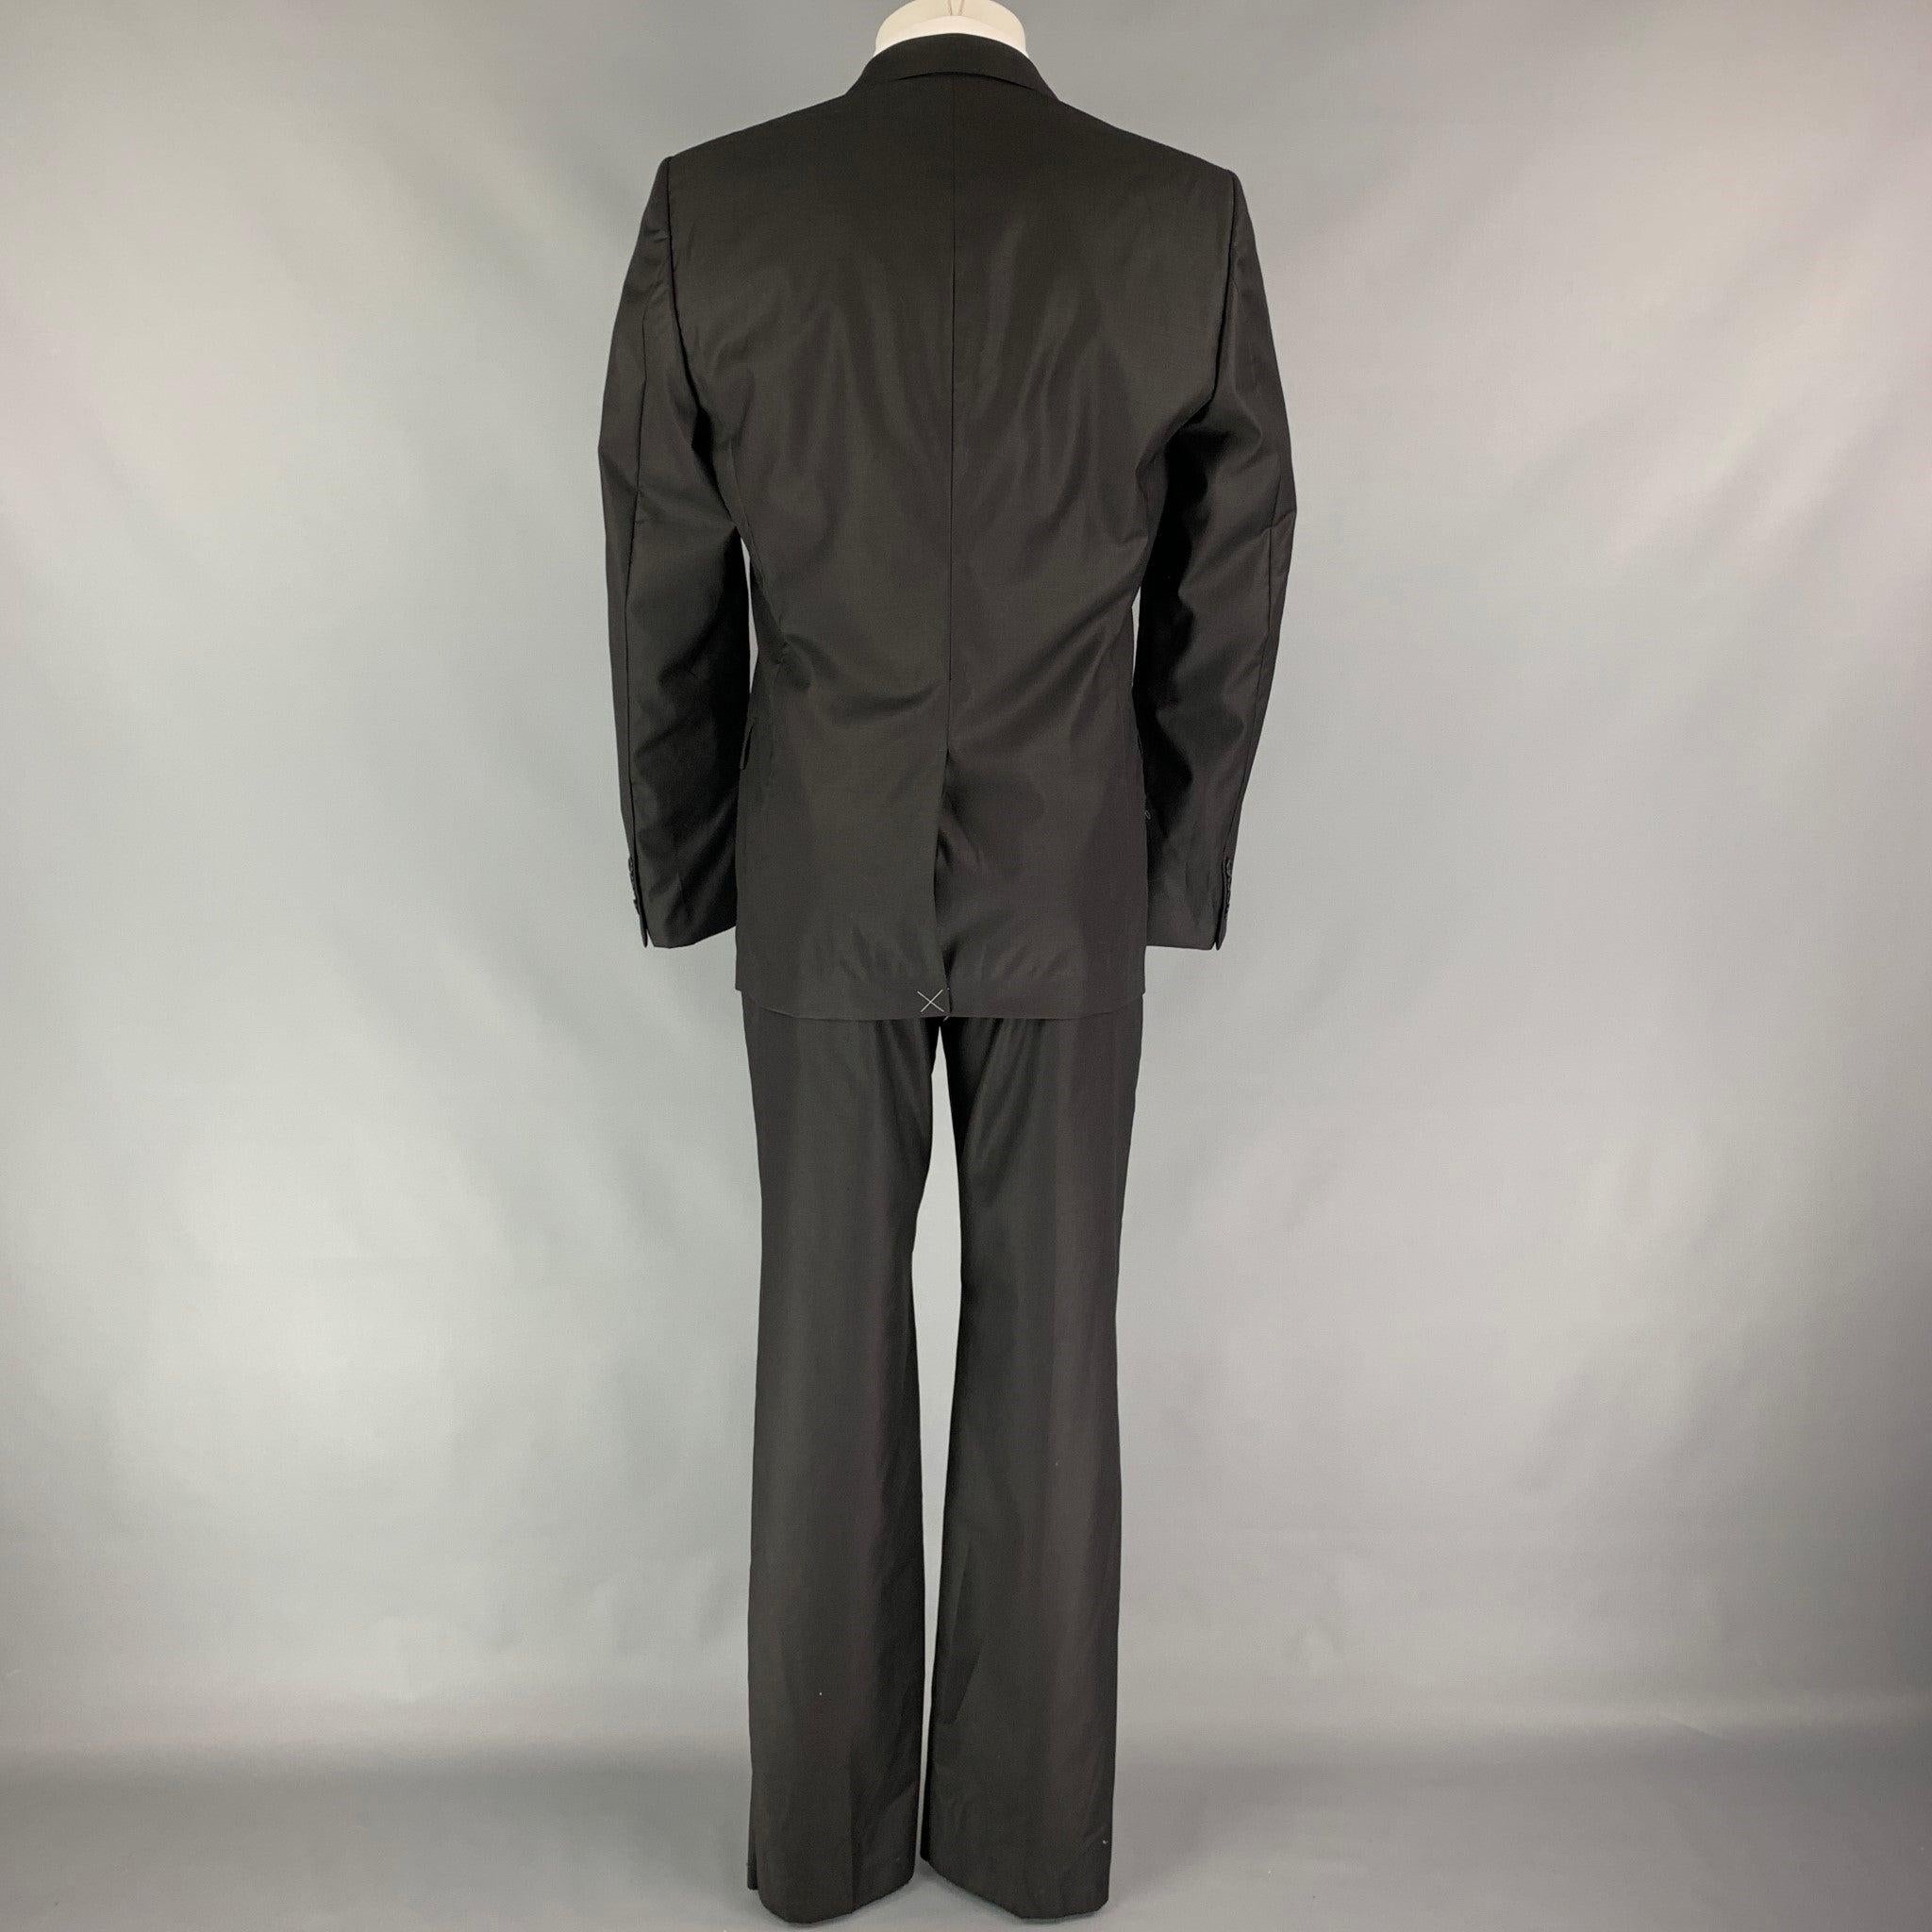 Men's CALVIN KLEIN COLLECTION Size 38 Black Wool Notch Lapel Suit